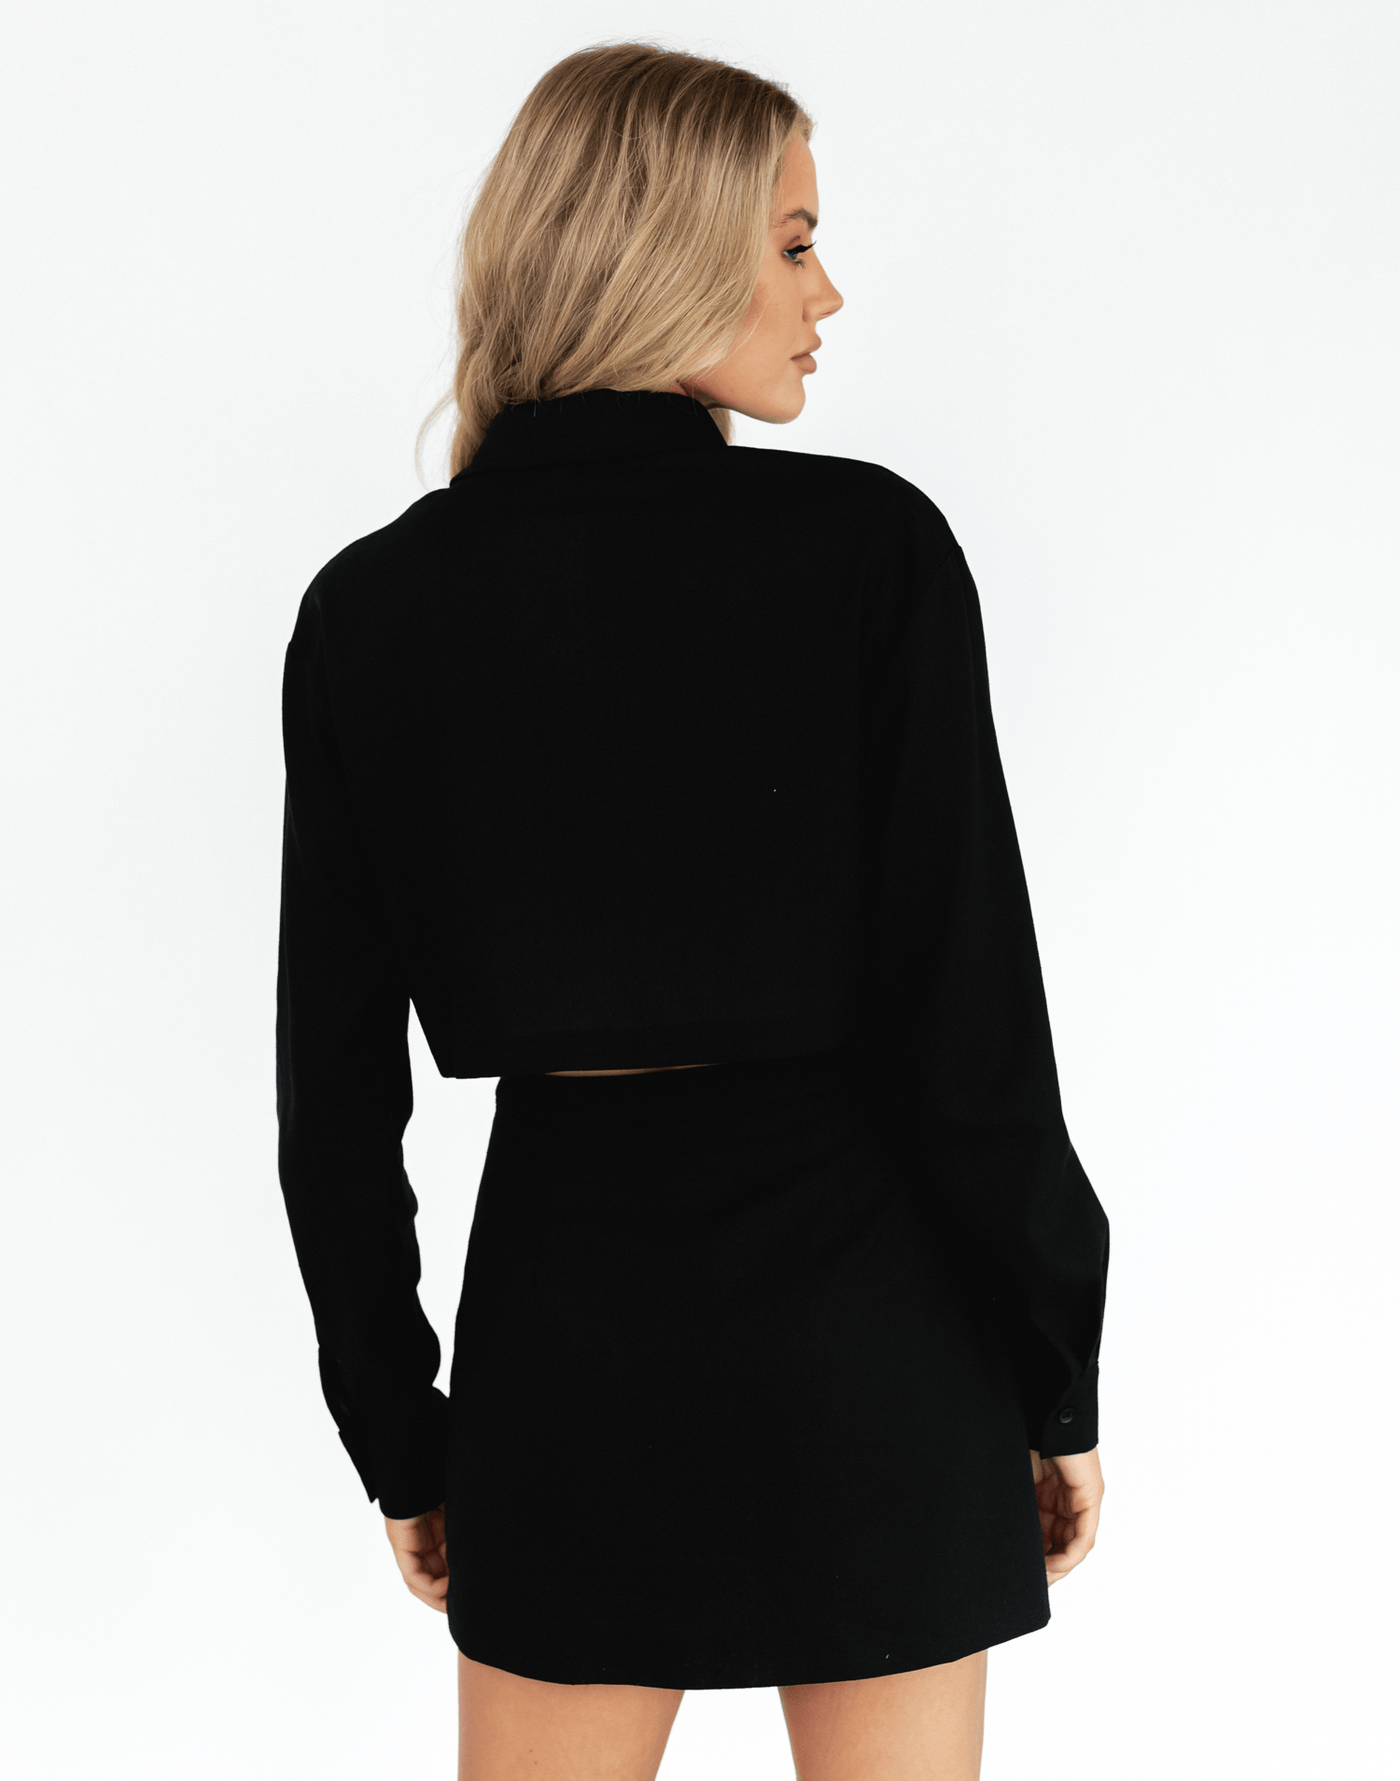 Dublin Mini Skirt (Black) - Linen Mini Skirt - Women's Skirt - Charcoal Clothing